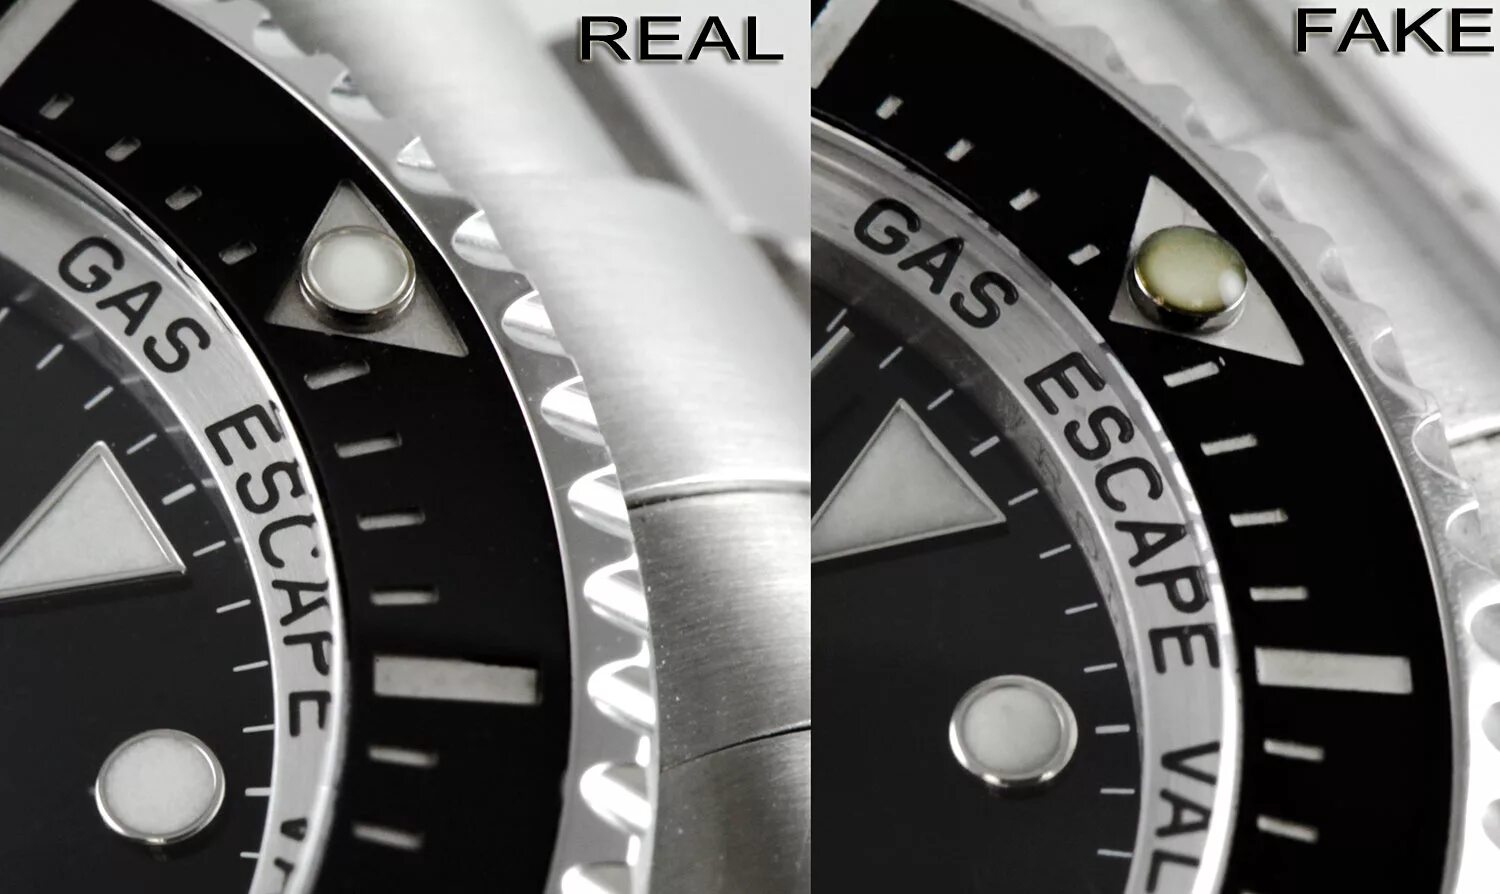 Fake Rolex vs true Rolex. Rolex оригинал как отличить. Часы Rolex оригинал s1964gstaibless. Как отличить ролекс оригинал